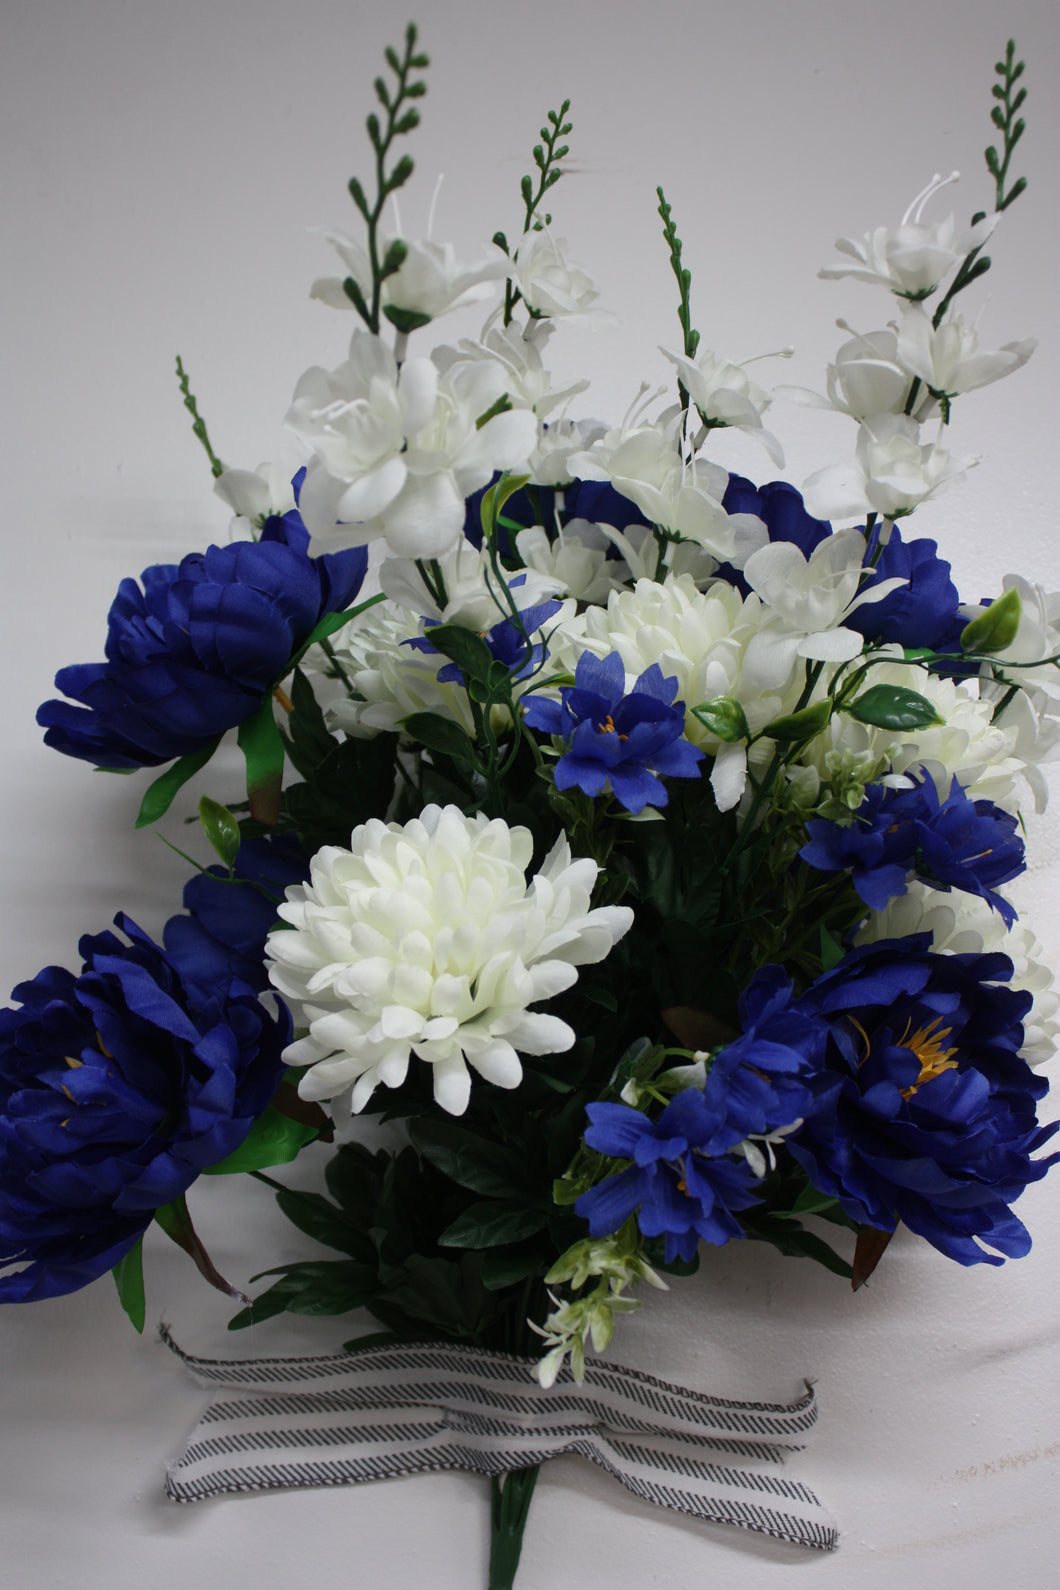 Memorial Cemetery Flowers Peony and Mum Bush Blue